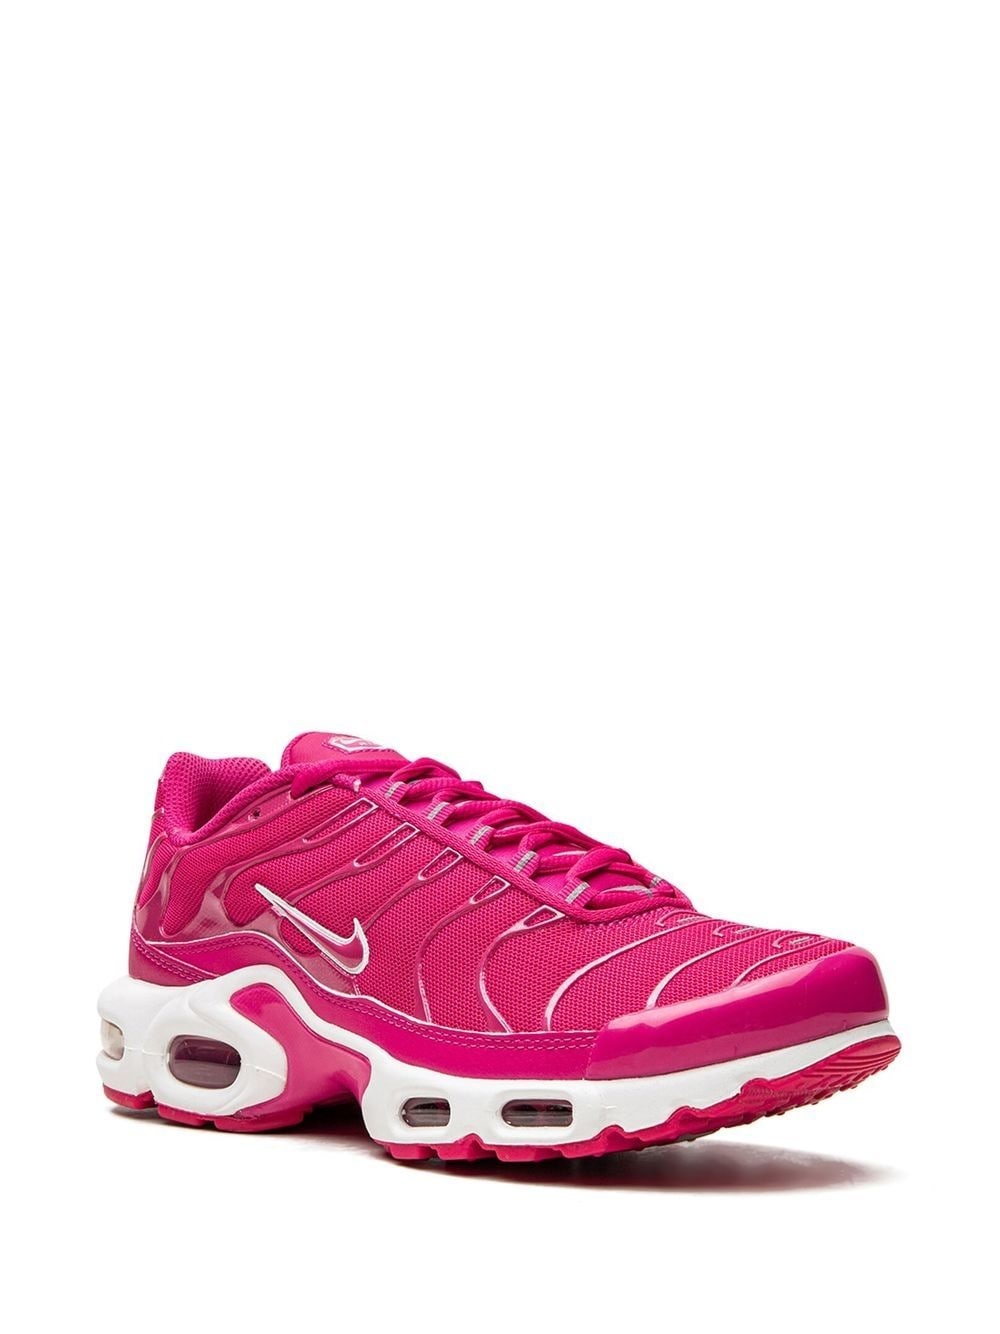 Air Max Plus "Hot Pink" sneakers - 2